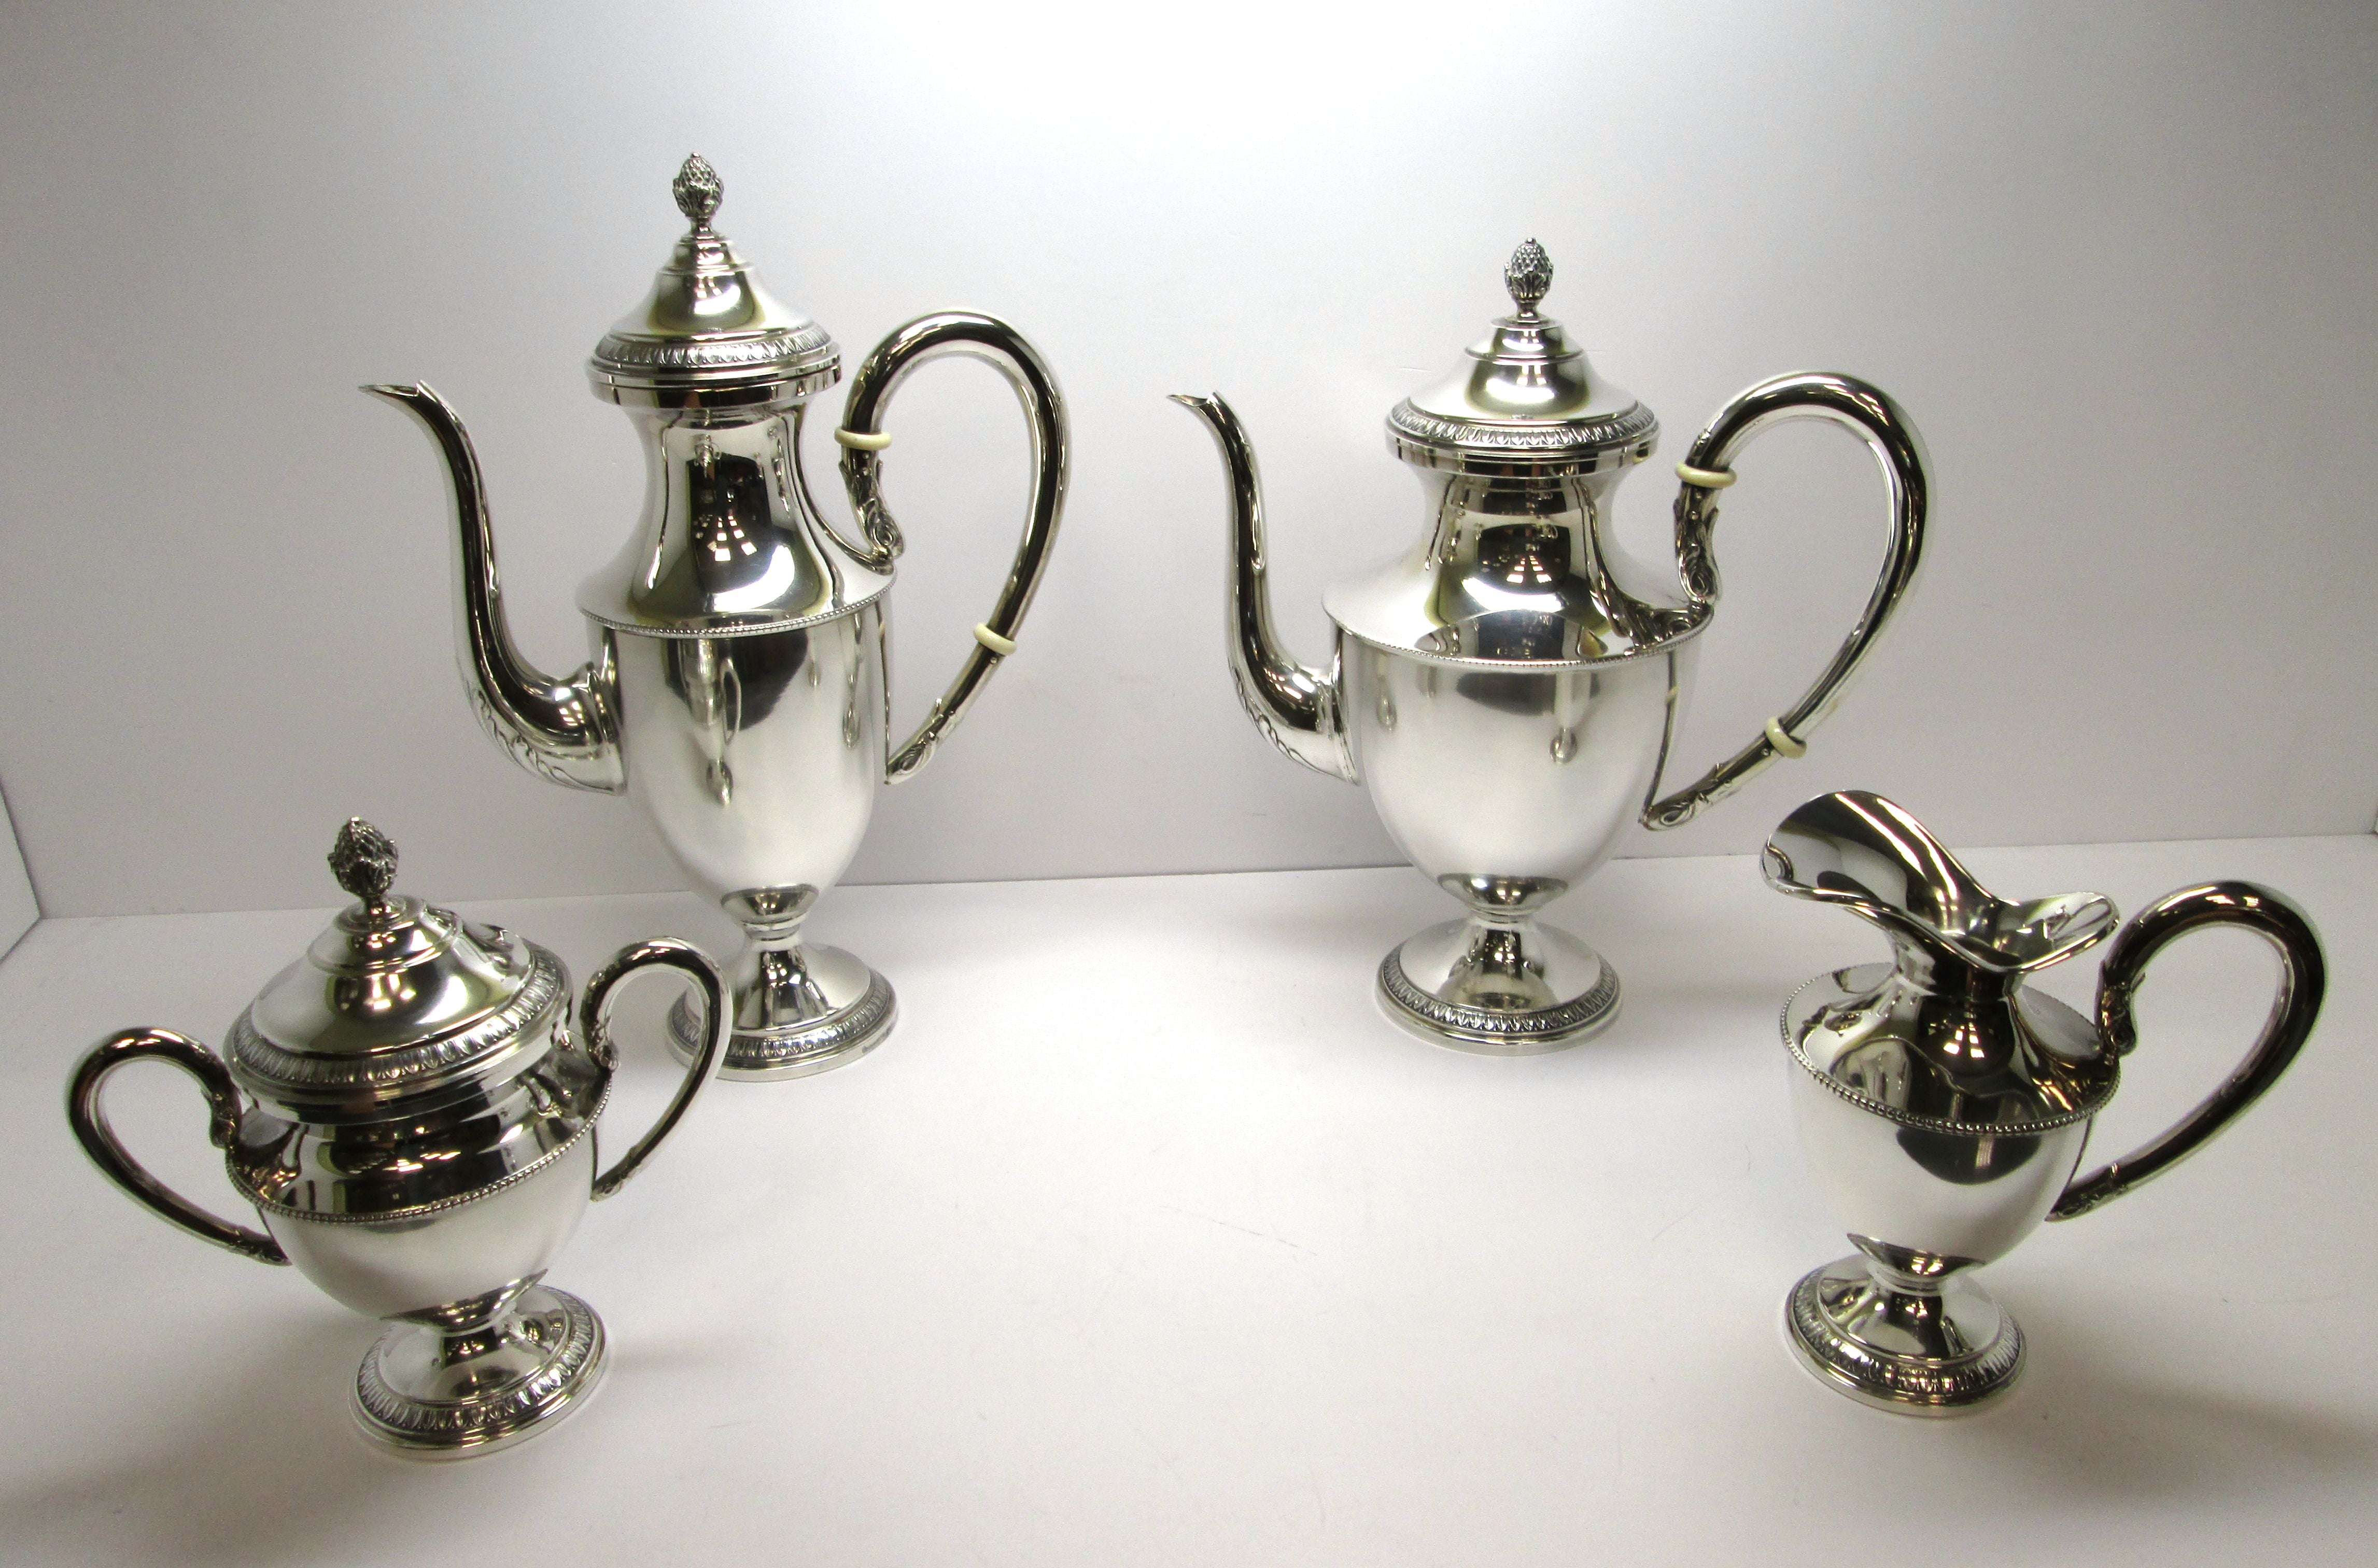 Quattro pezzi teiera lattiera caffettiera zuccheriera in argento 800 stile impero usati.